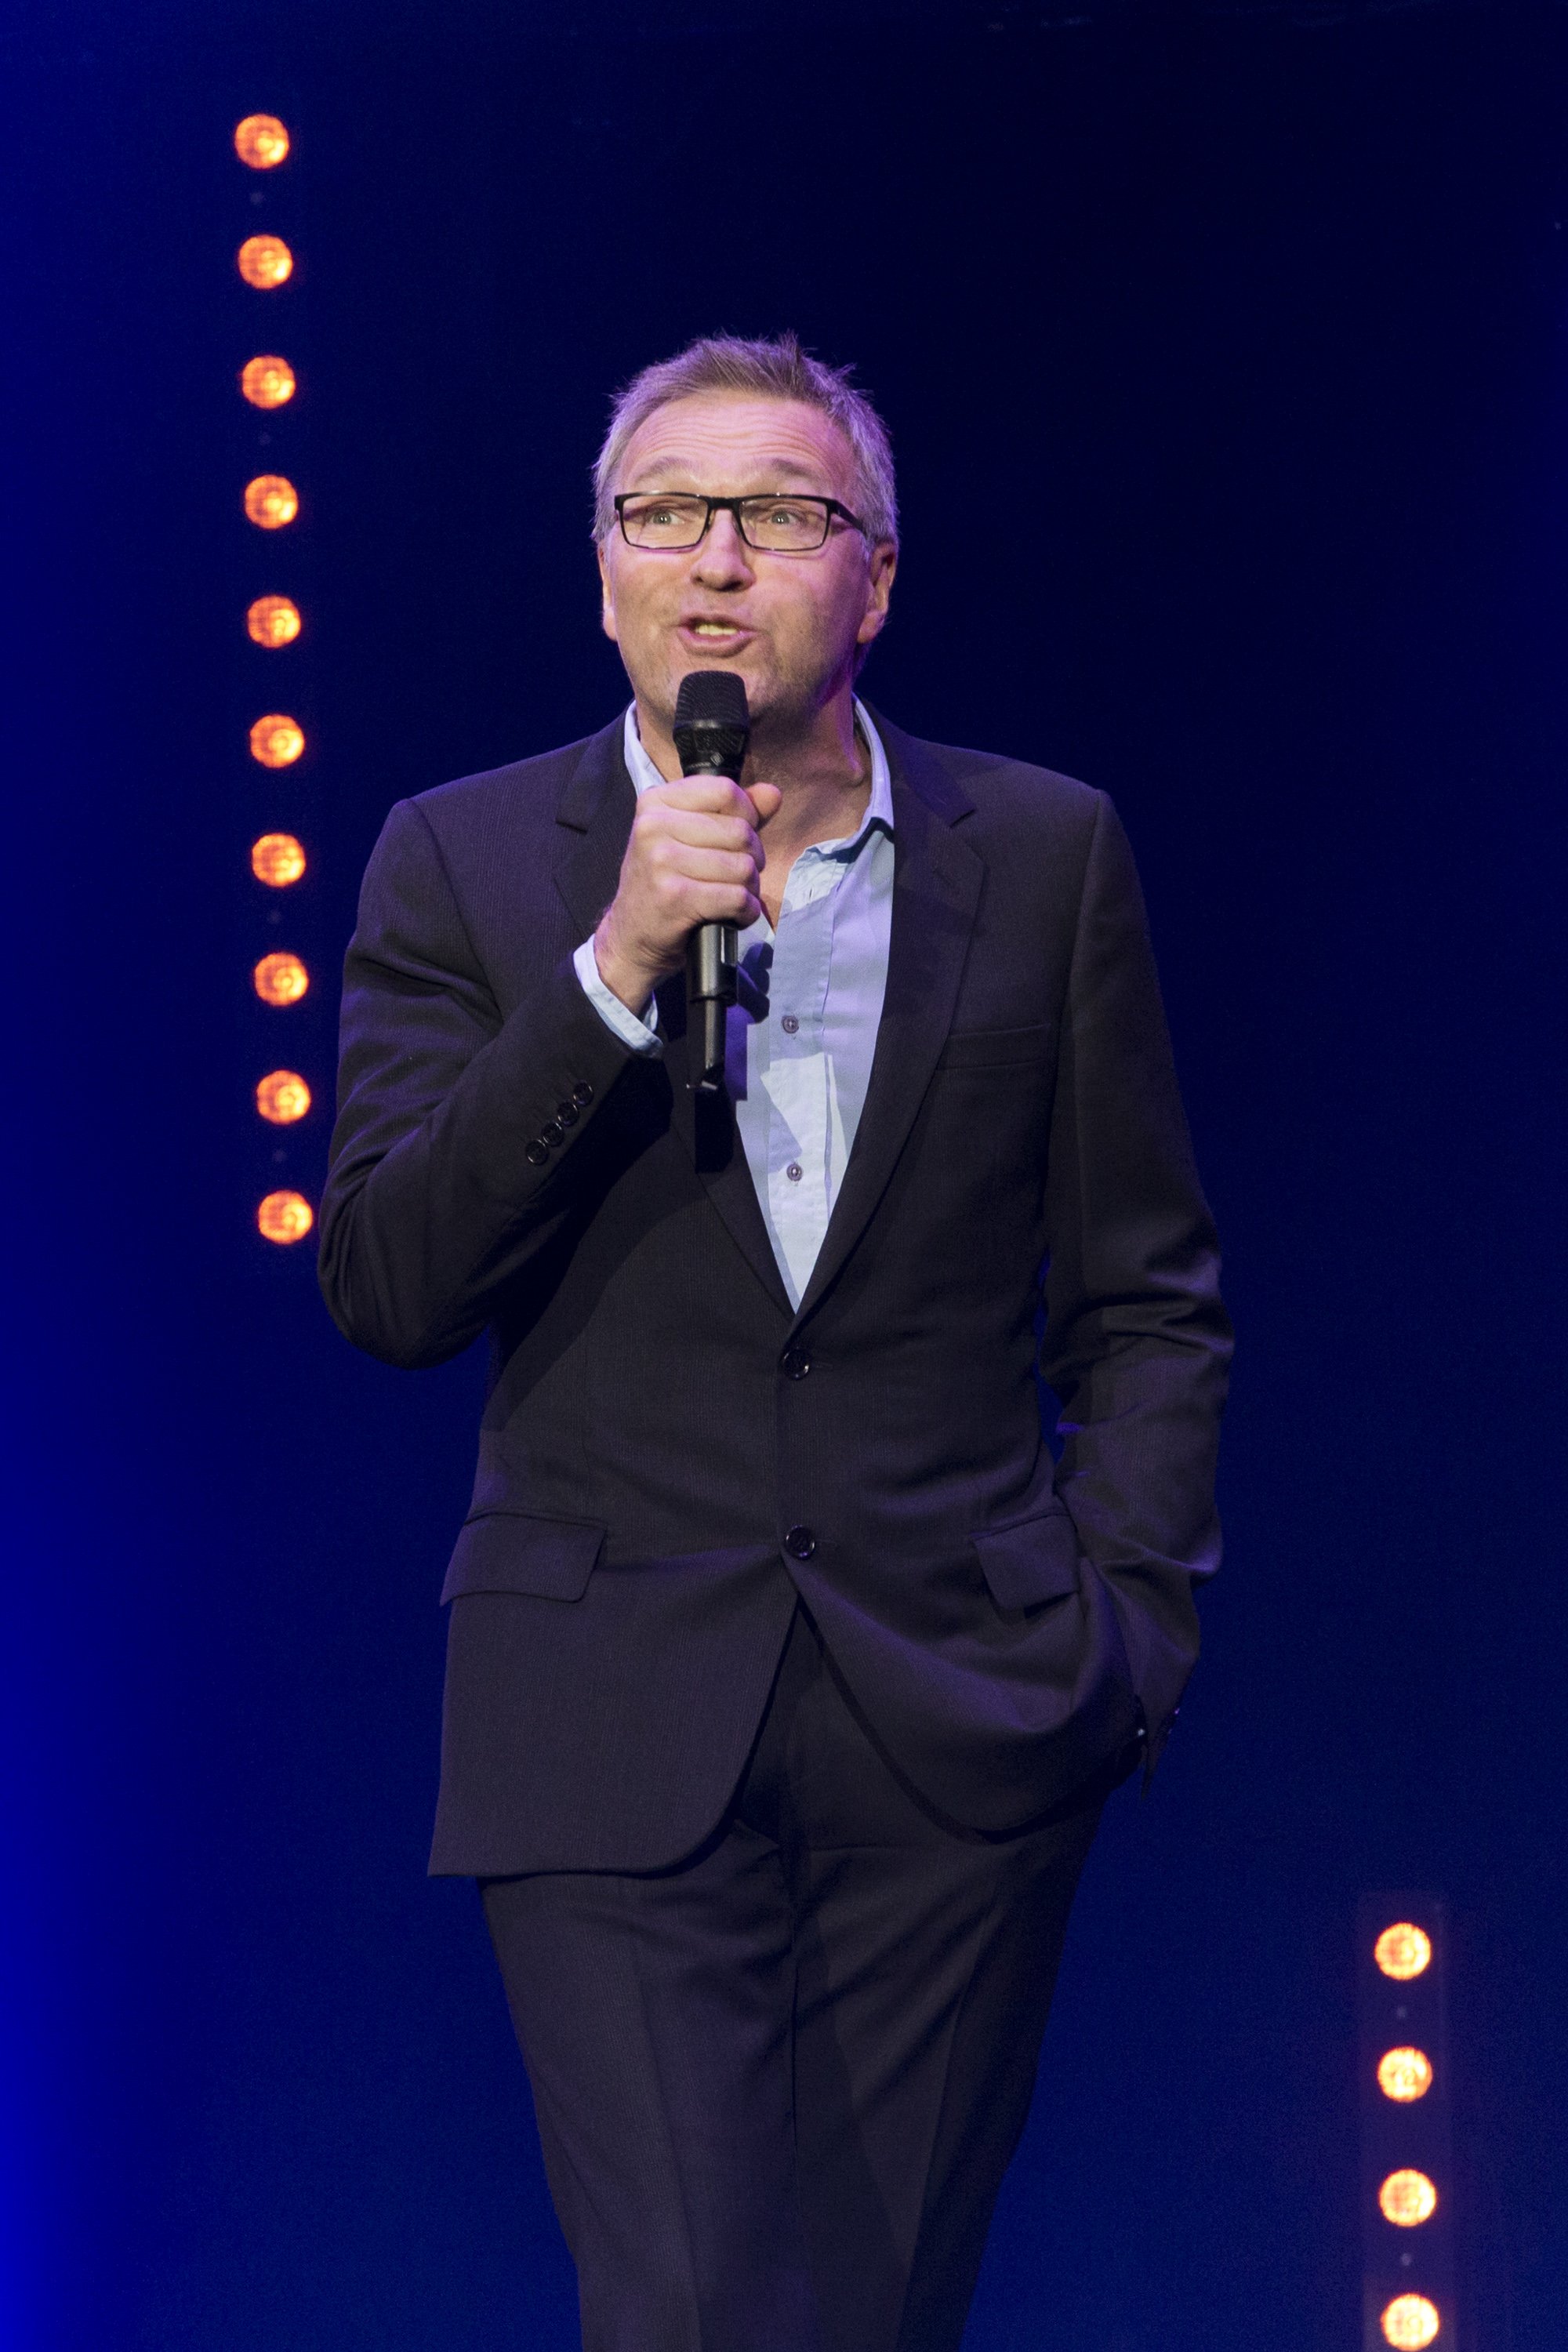 Laurent Ruquier se produit lors de la 3e édition du spectacle 'Europe 1 fait Bobino' à Bobino le 18 février 2013 à Paris, France. | Photo : Getty Images